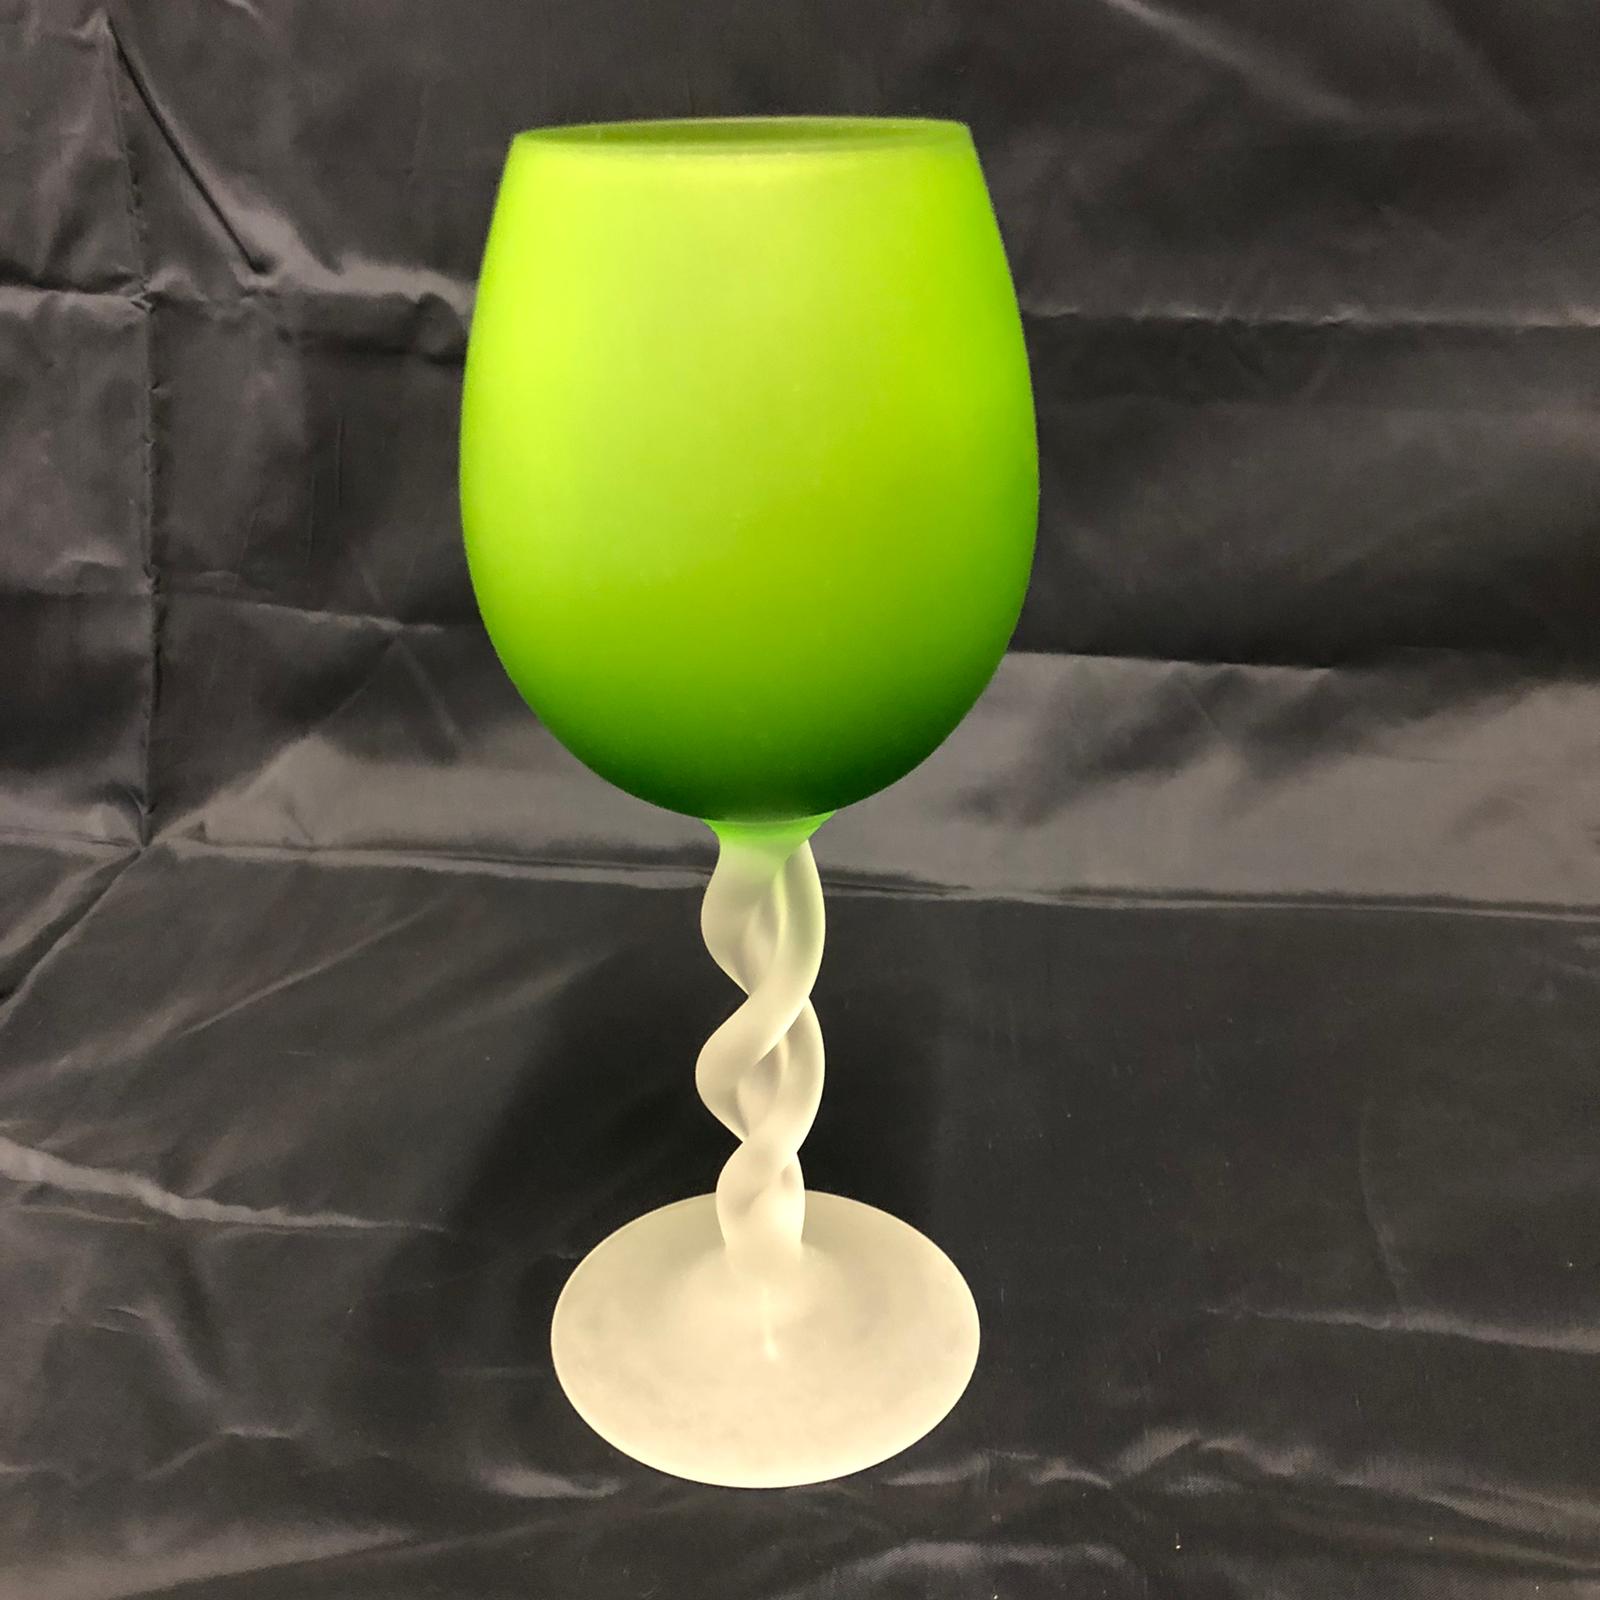 Servizio di 4 bicchieri verdi